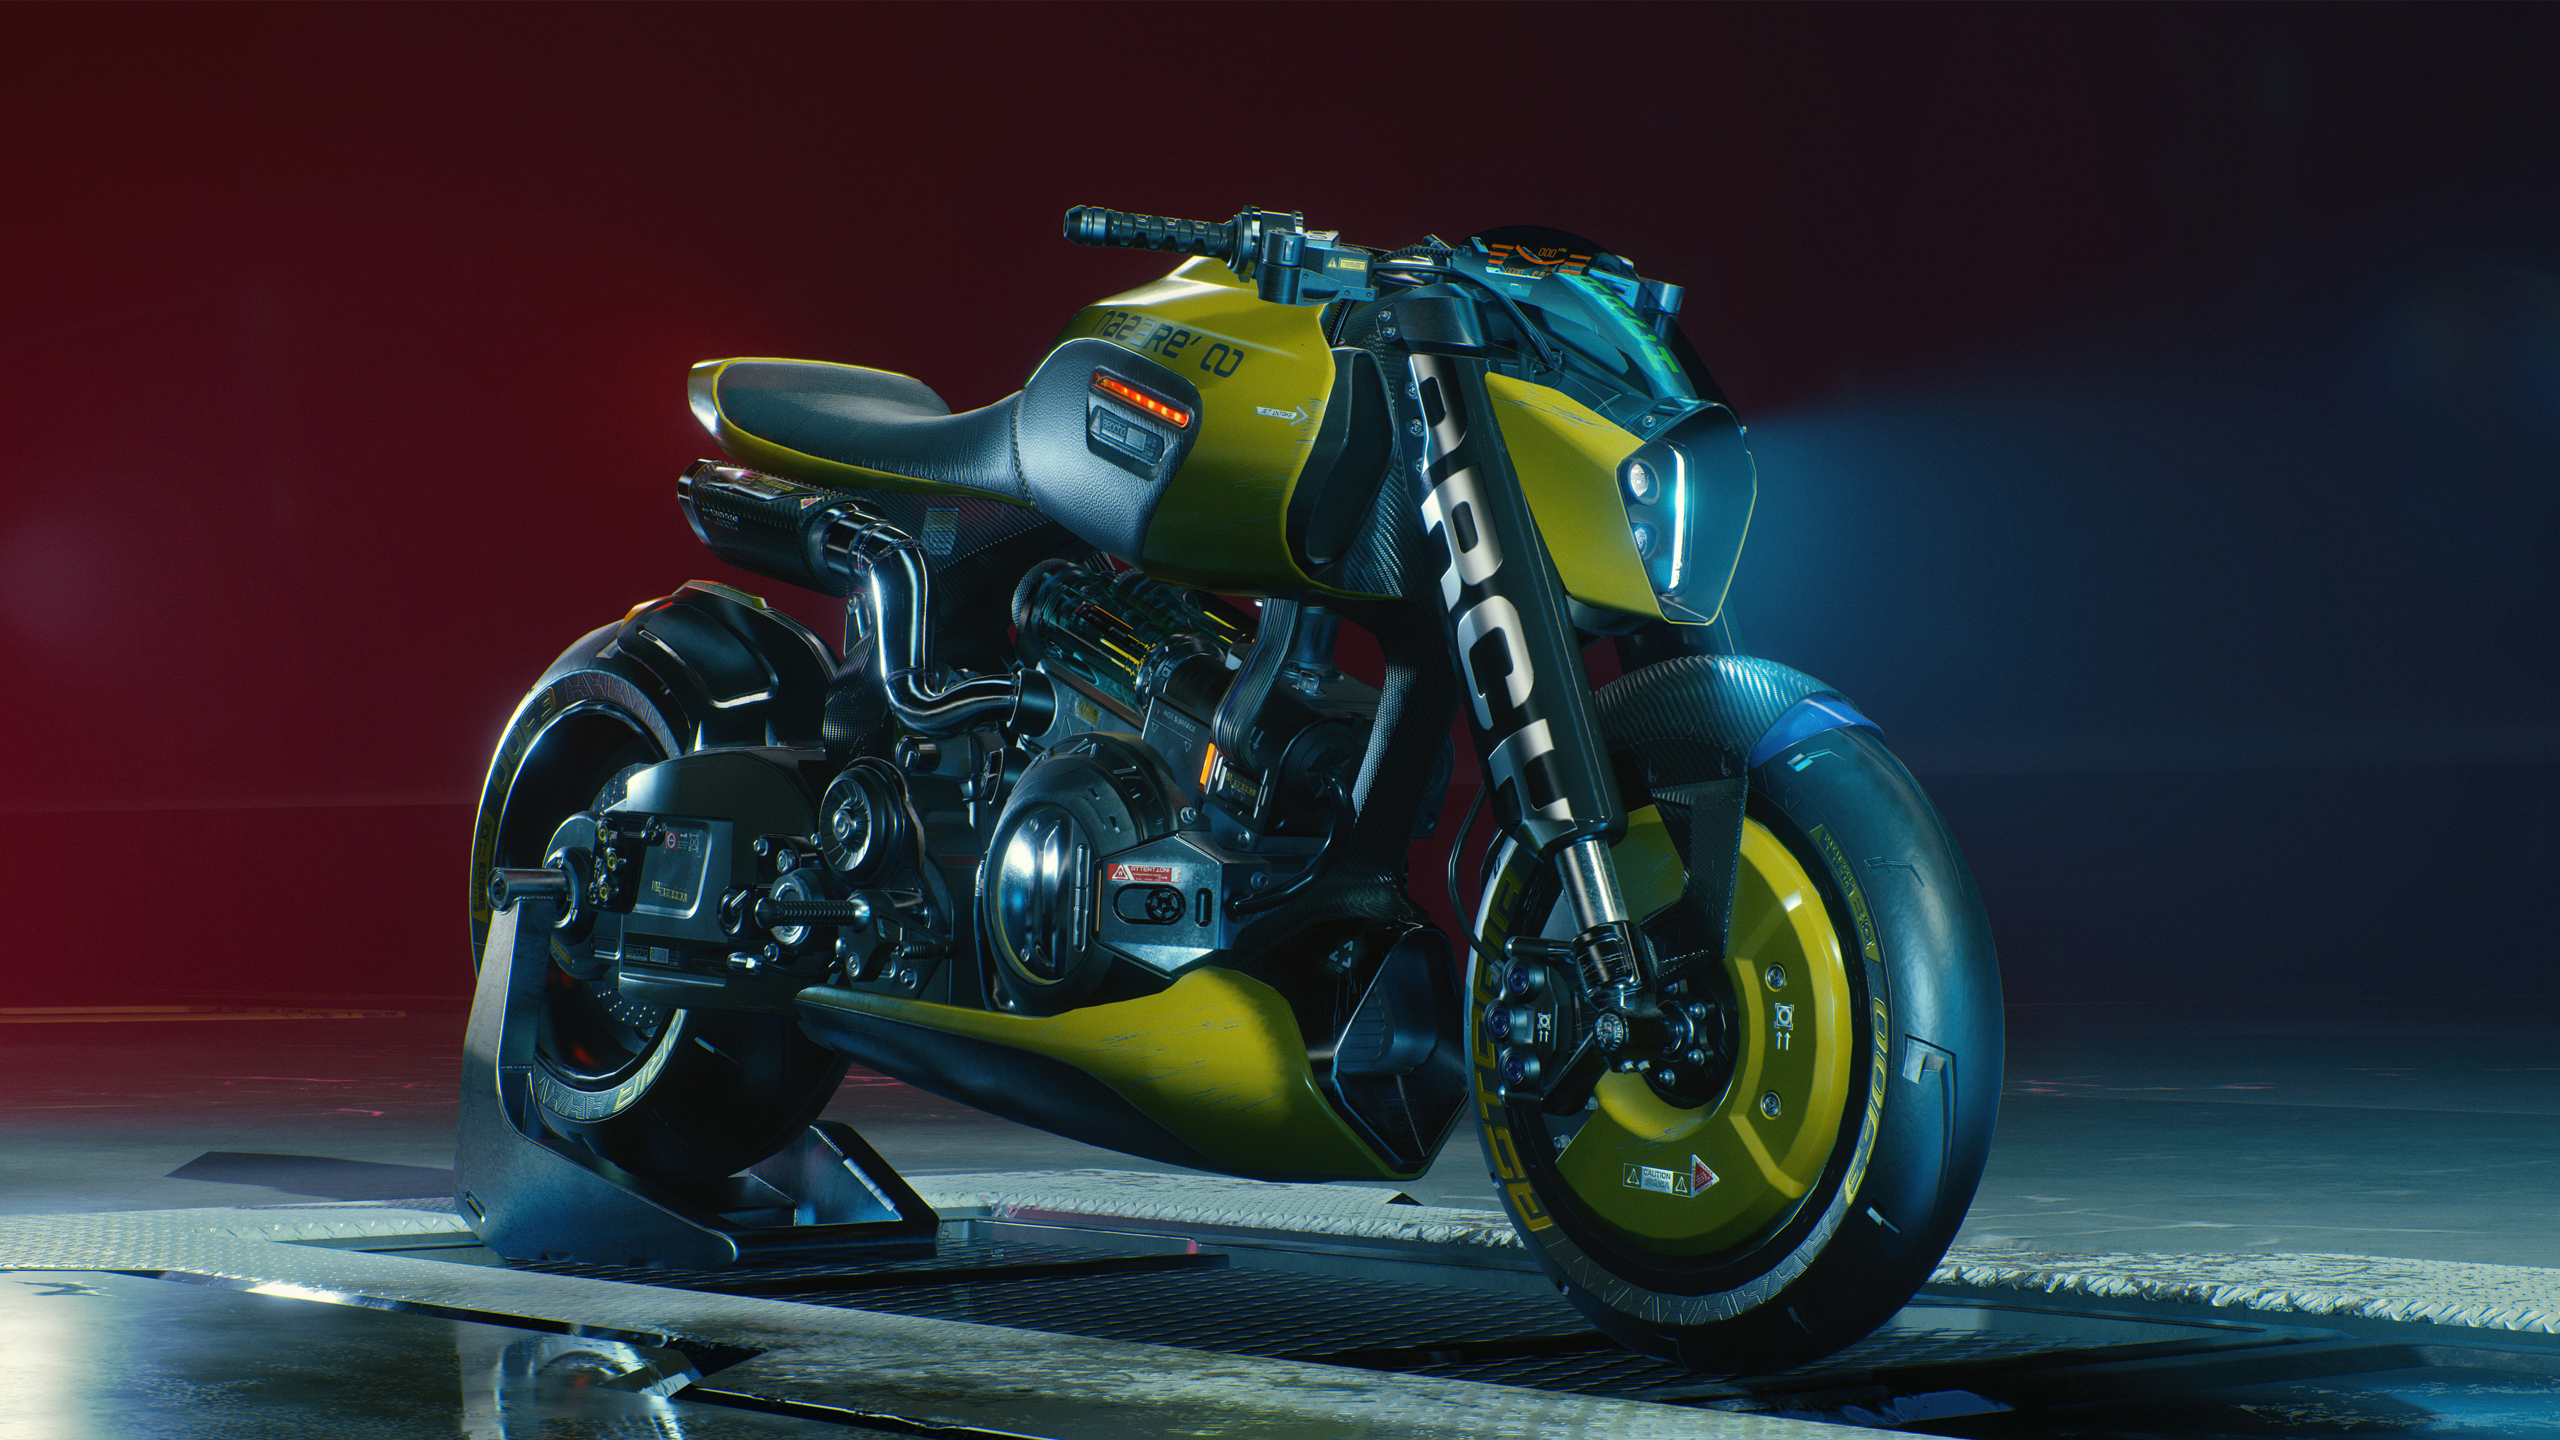 ARCH Motorcycle Video Games Video Game Art Cyberpunk Cyberpunk 2077 Futuristic ARCH Nazare Digital A 2560x1440